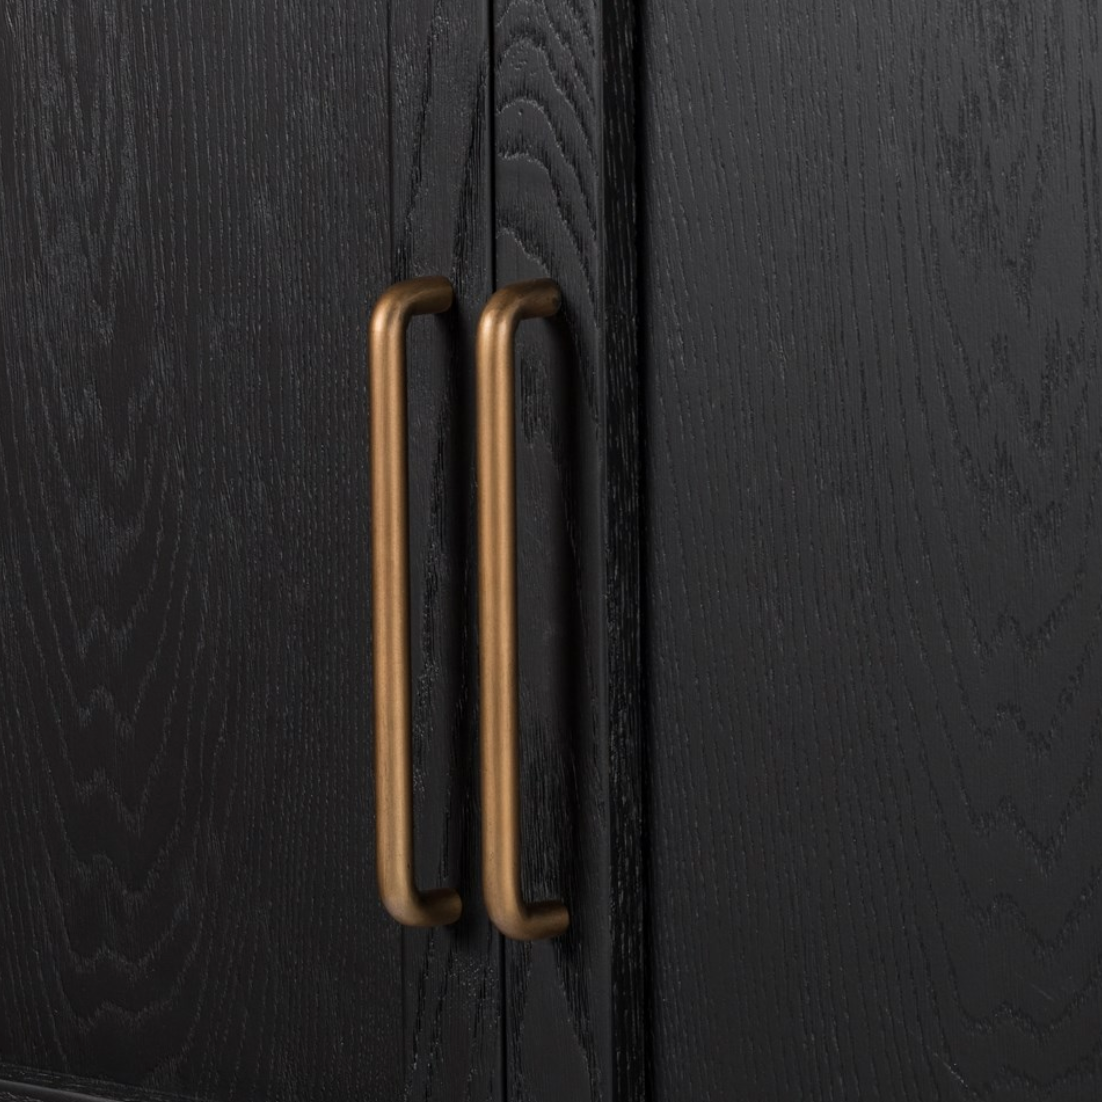 Tolle Black Oak Panel Door Cabinet